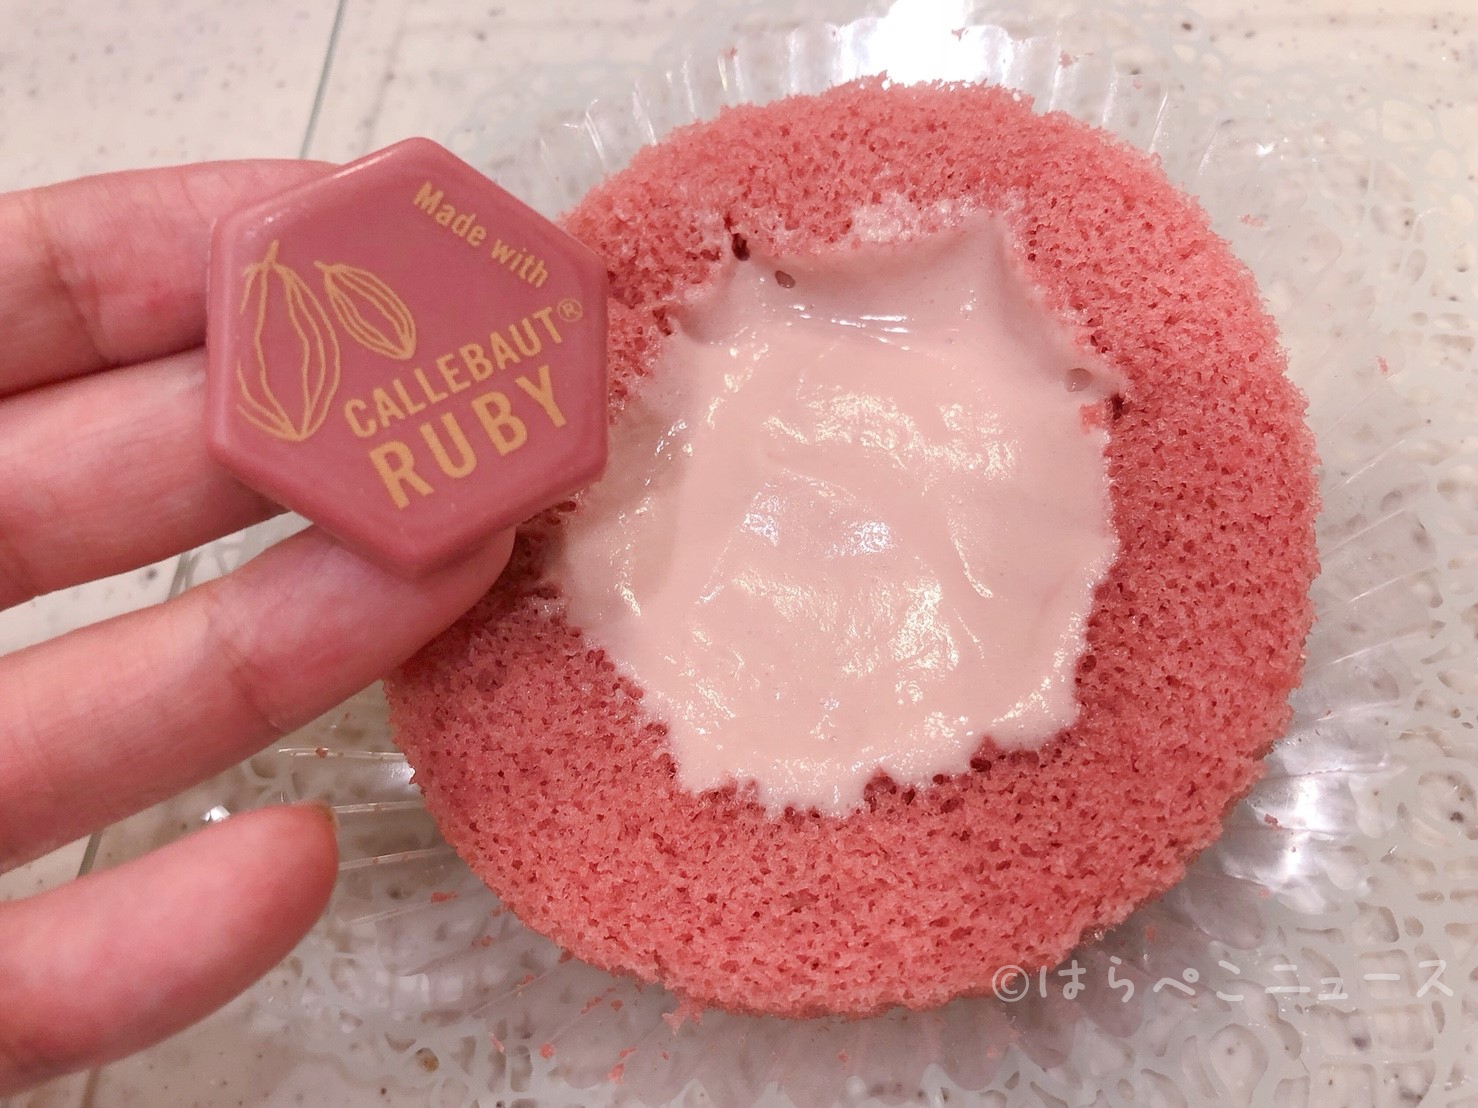 【実食レポ】ローソン「Uchi Café プレミアム ルビーチョコレートのロールケーキ」